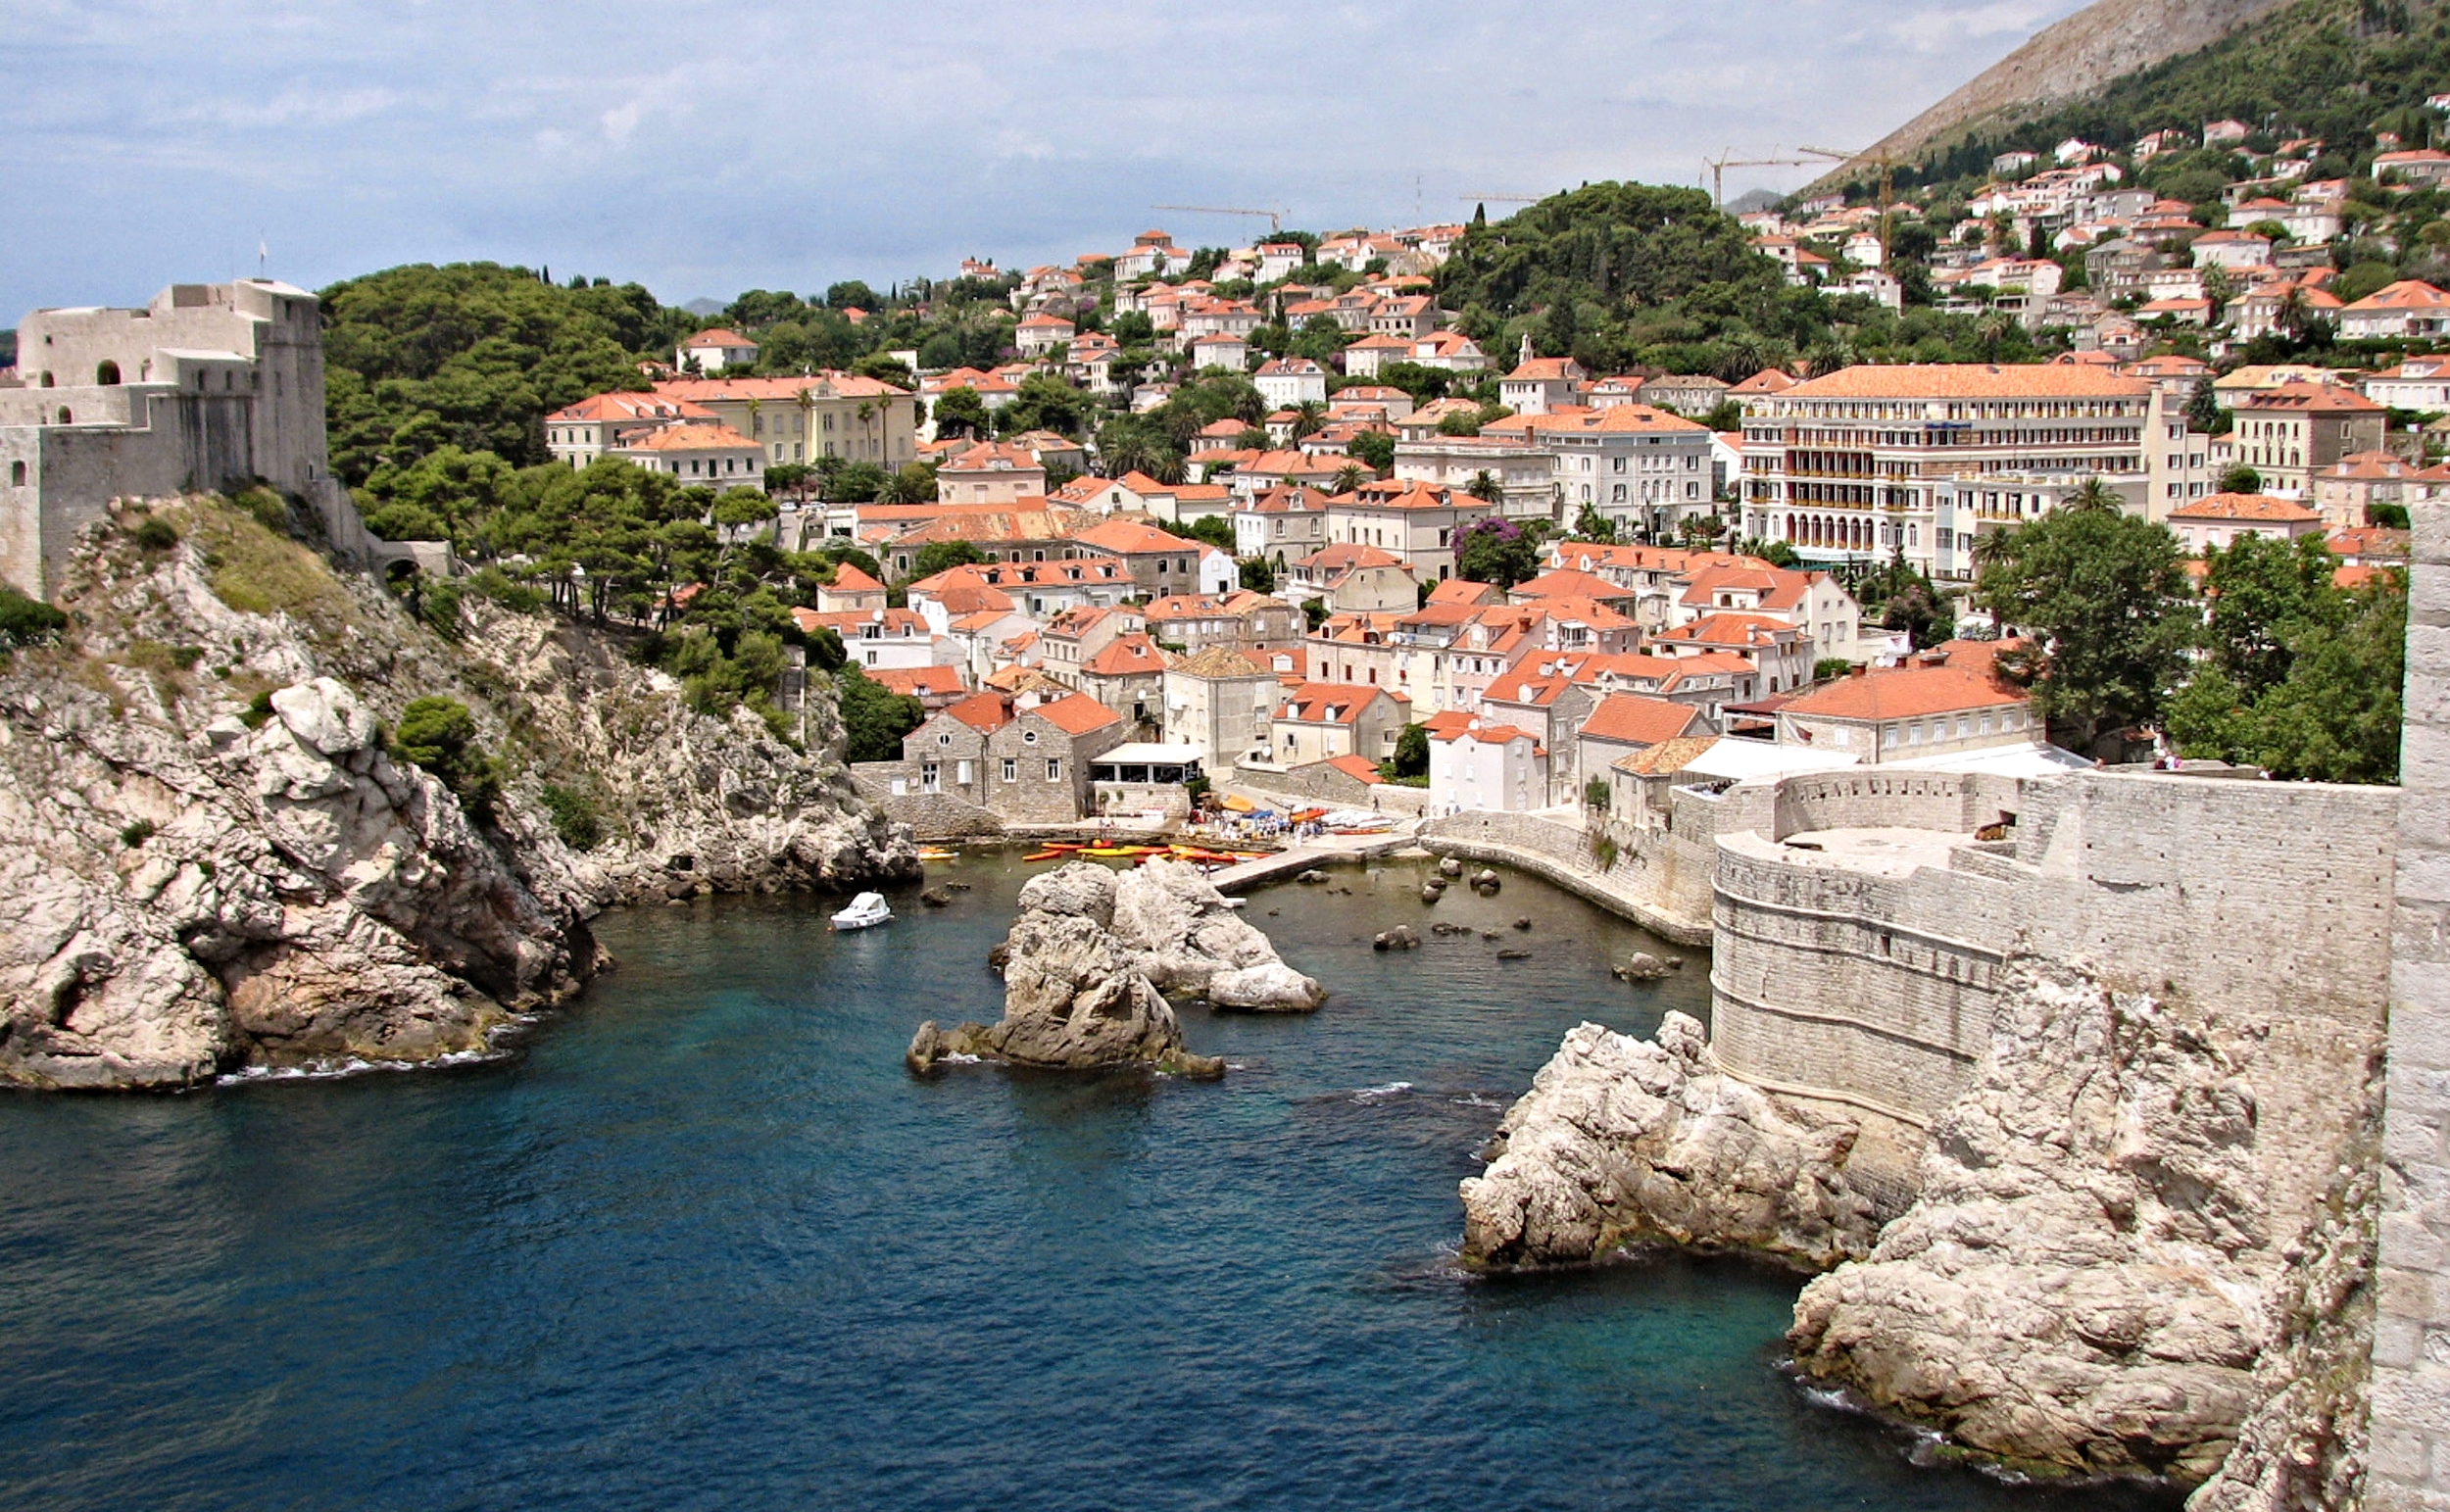   Dubrovnik   Así es el "Desembarco del Rey" de Juego de Tronos   IR  